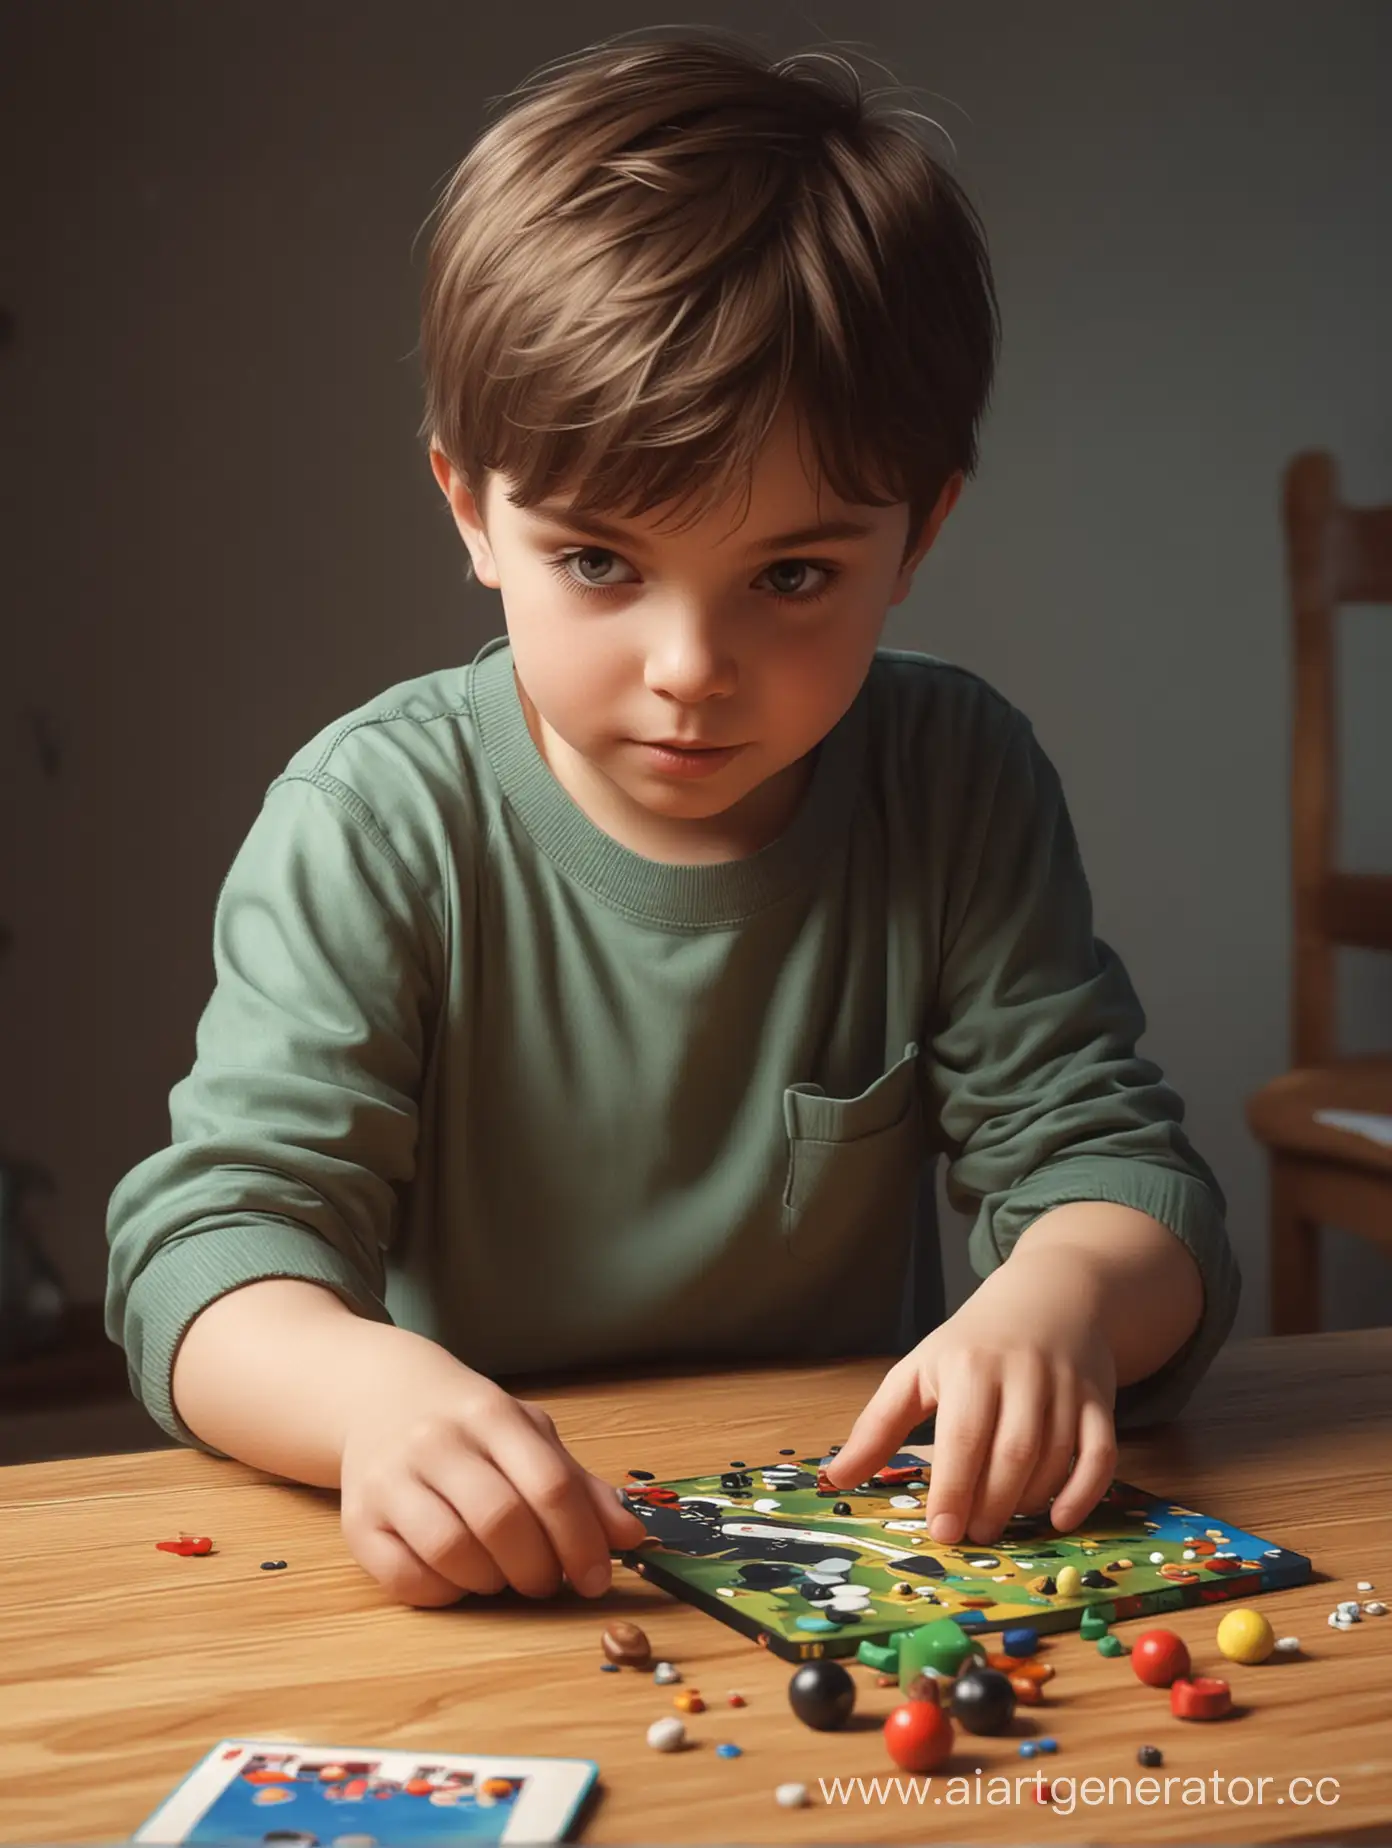 ребенок, играет в развивающие игры, в реабистичном стиле
